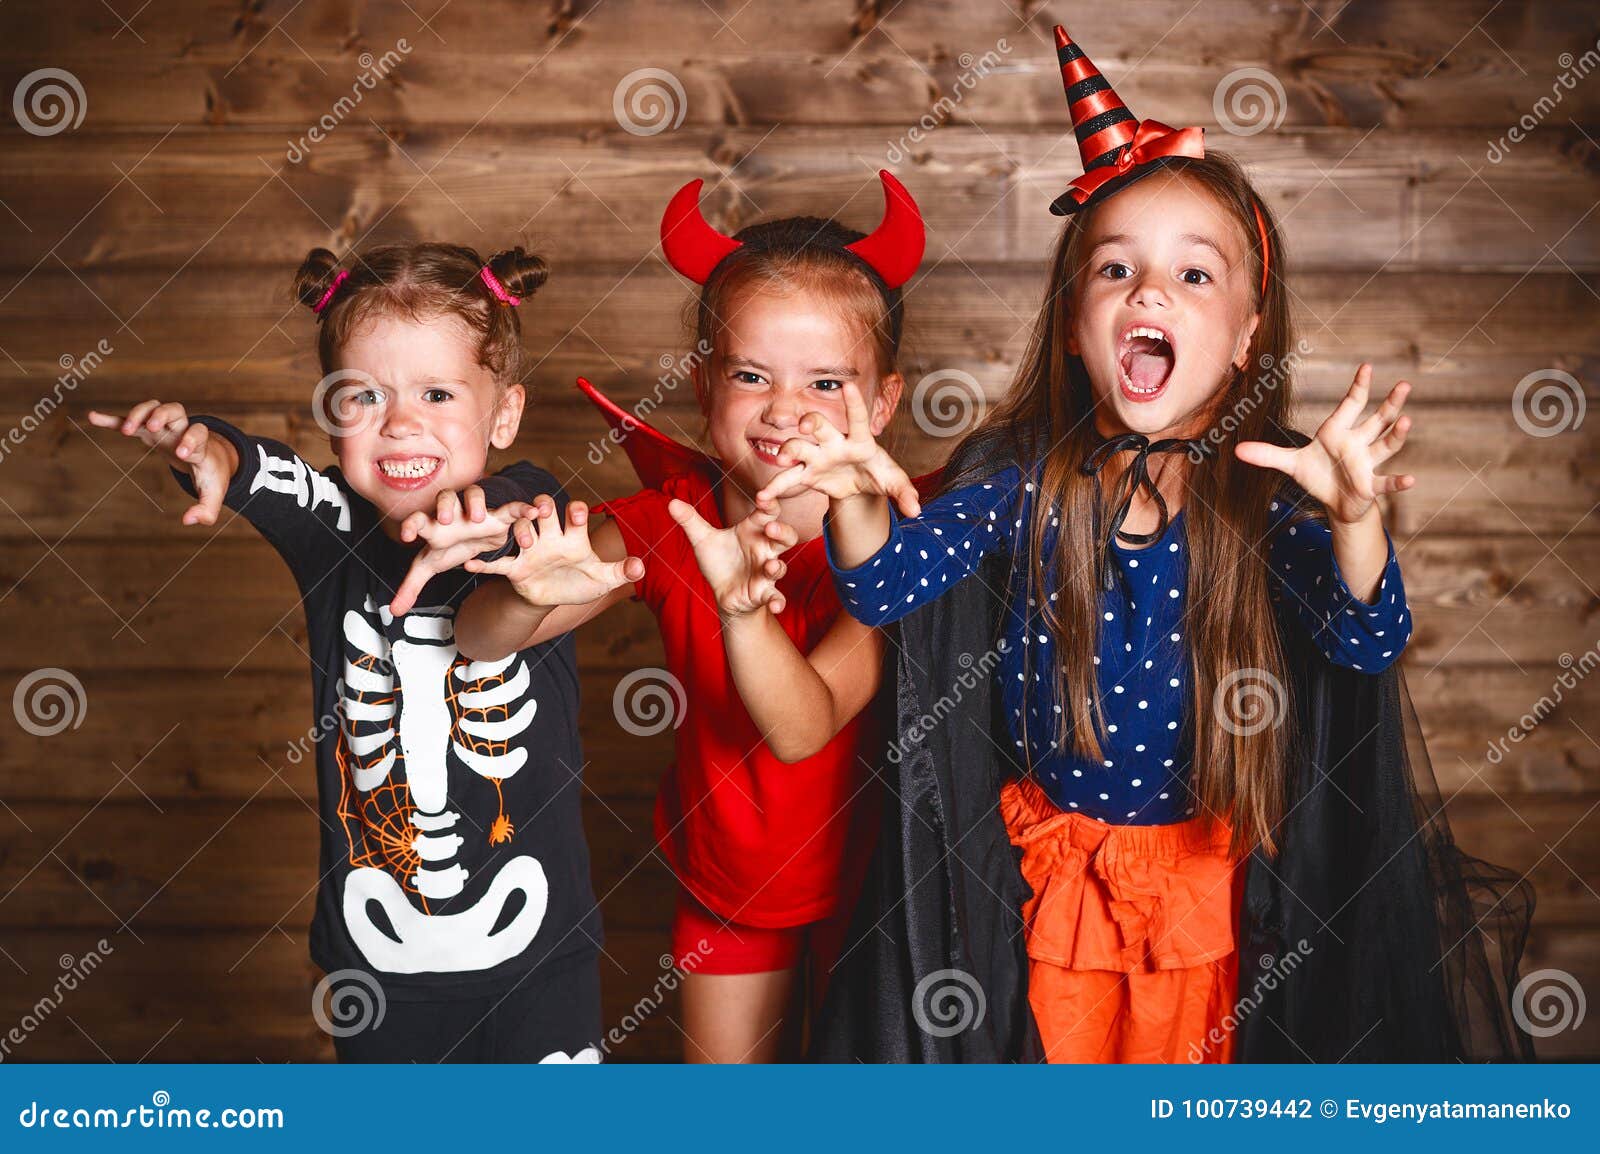 https://thumbs.dreamstime.com/z/festa-halloween-bambini-divertenti-del-gruppo-costumi-di-carnevale-100739442.jpg